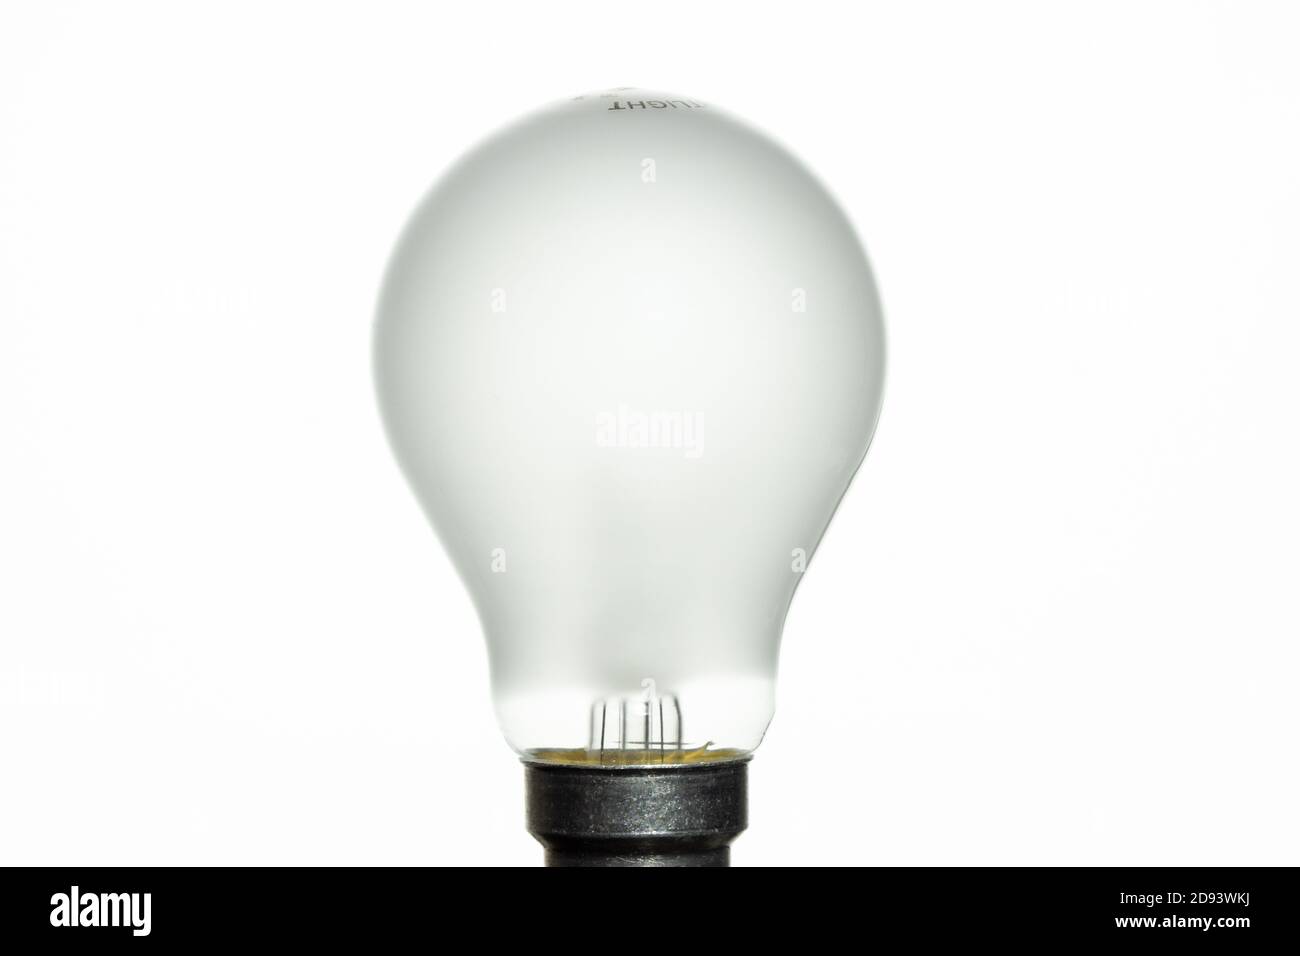 Philips Glühlampe „Nightlight“, Glühlampe mit geringer Wattzahl für weiches Licht bei Nacht oder in kleinen Räumen. Beispiel einer typischen Glühbirne. Stockfoto